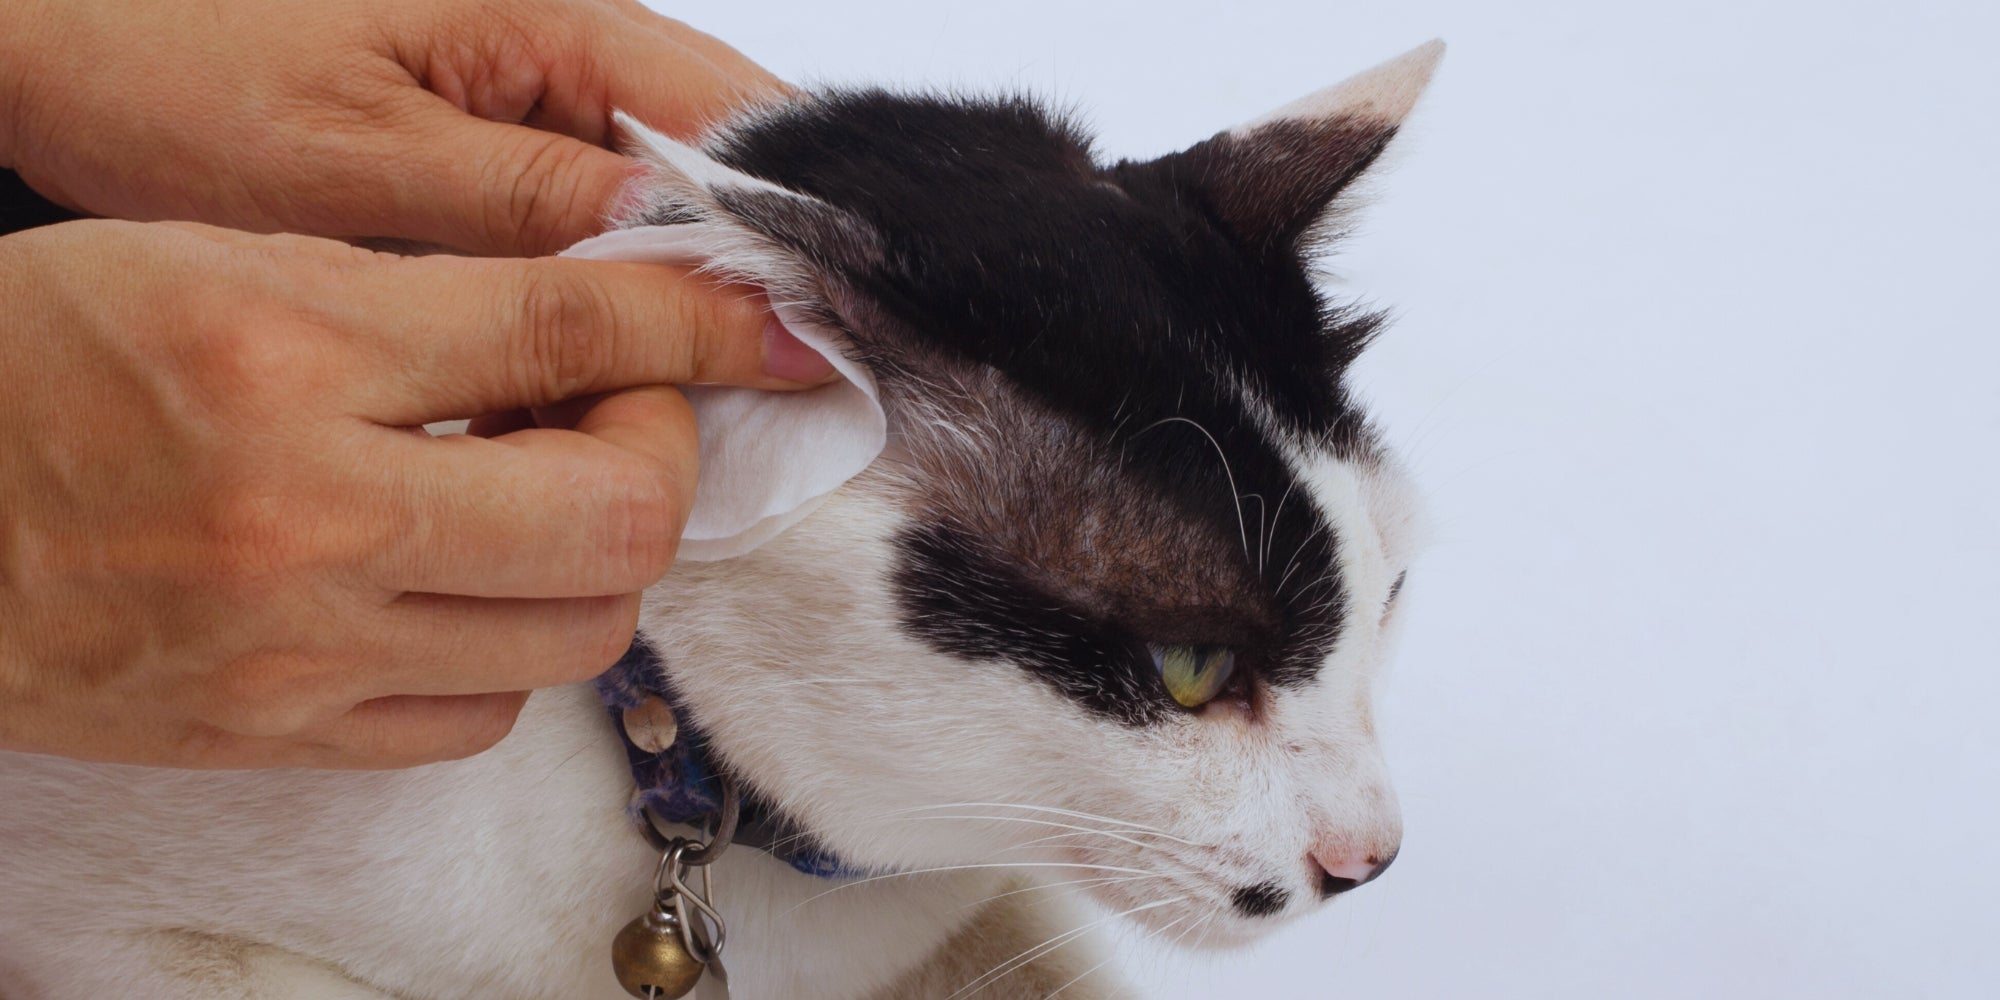 Limpiar los oídos de los gatos con toallitas para los oídos, ayuda a aliviar el picor y a reducir los olores.